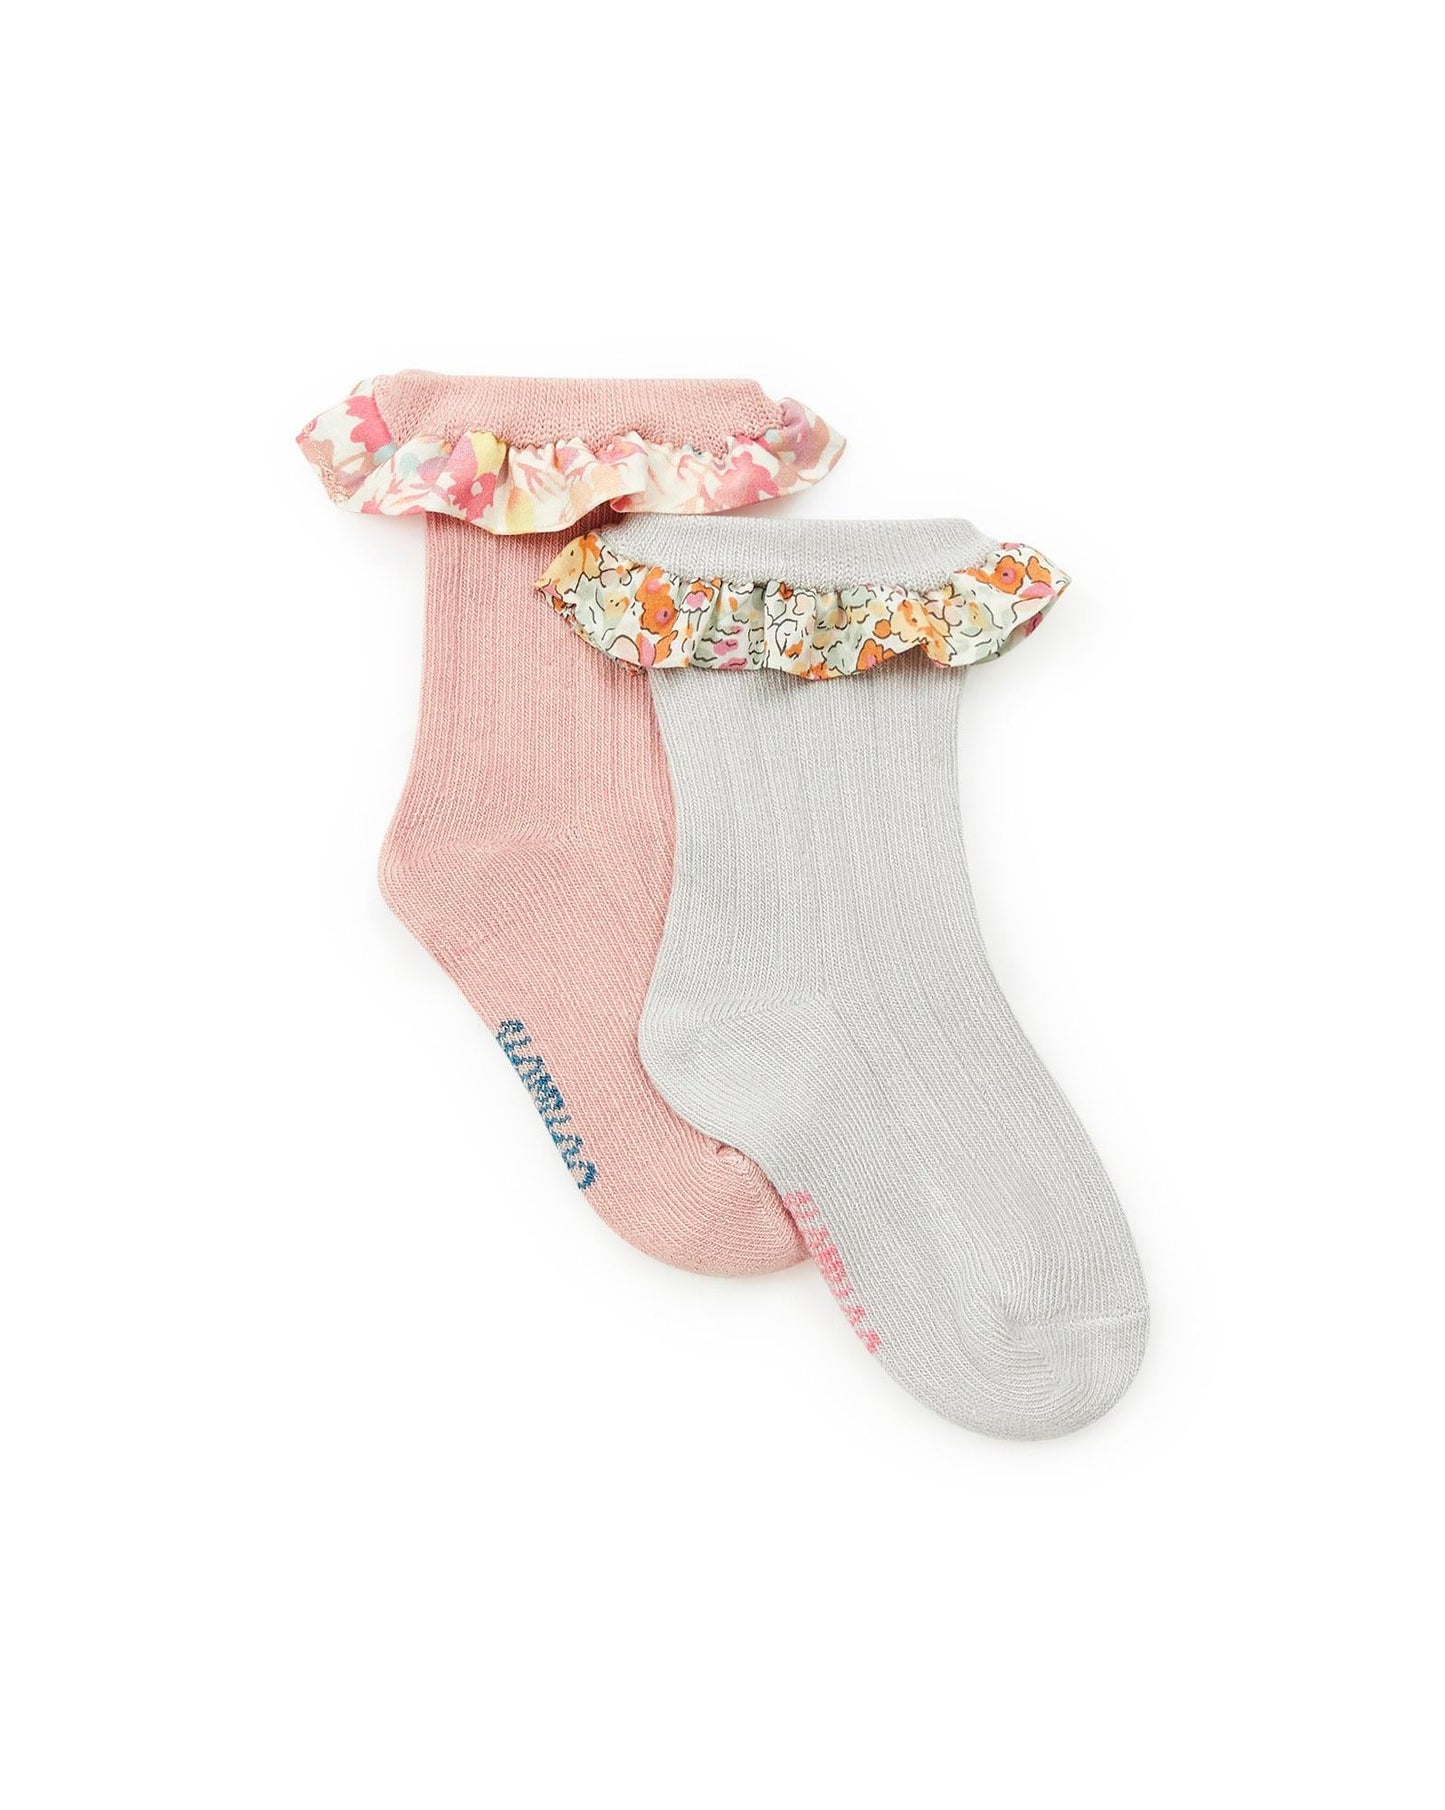 Socks - Pink Baby mixed rib